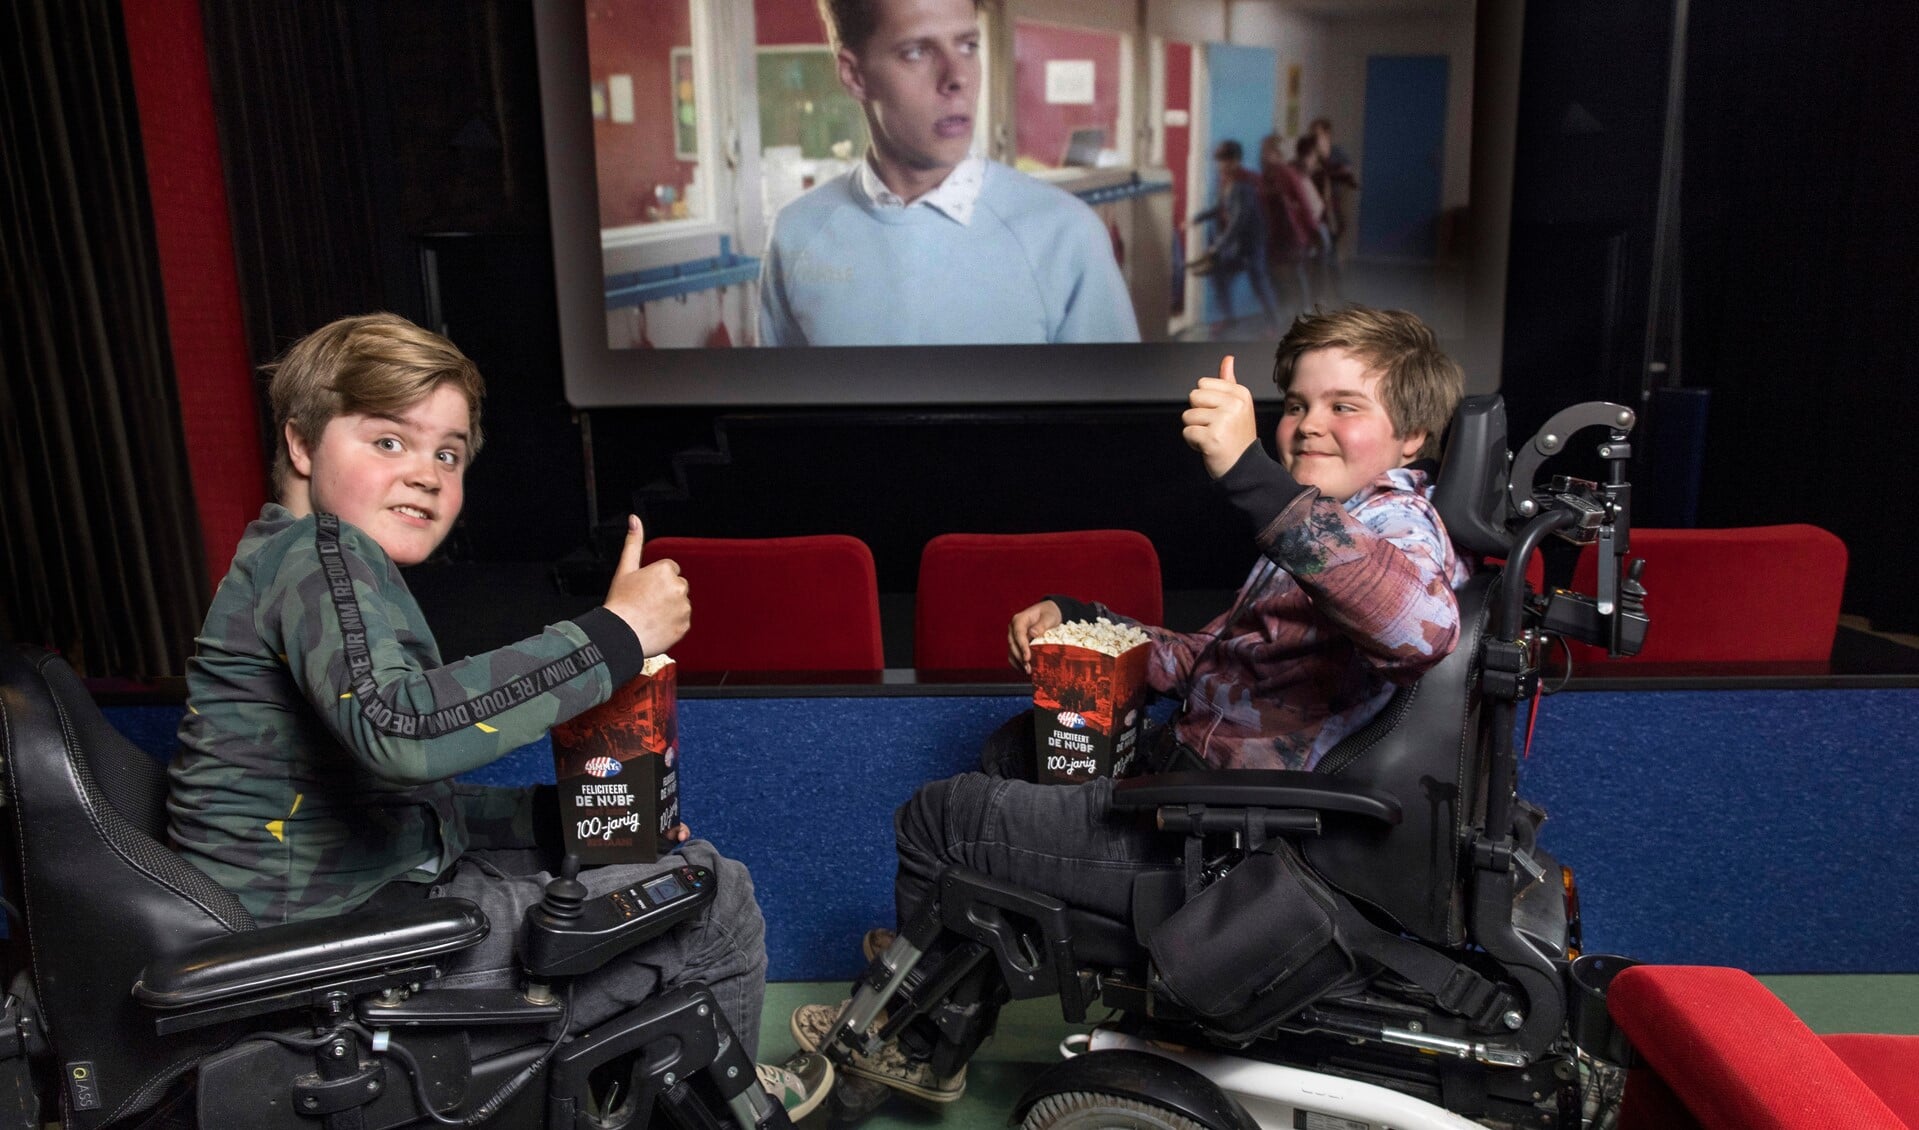 Milan en Ilya zitten met hun rolstoel op de beste rij in de Bio Bioscoop. 